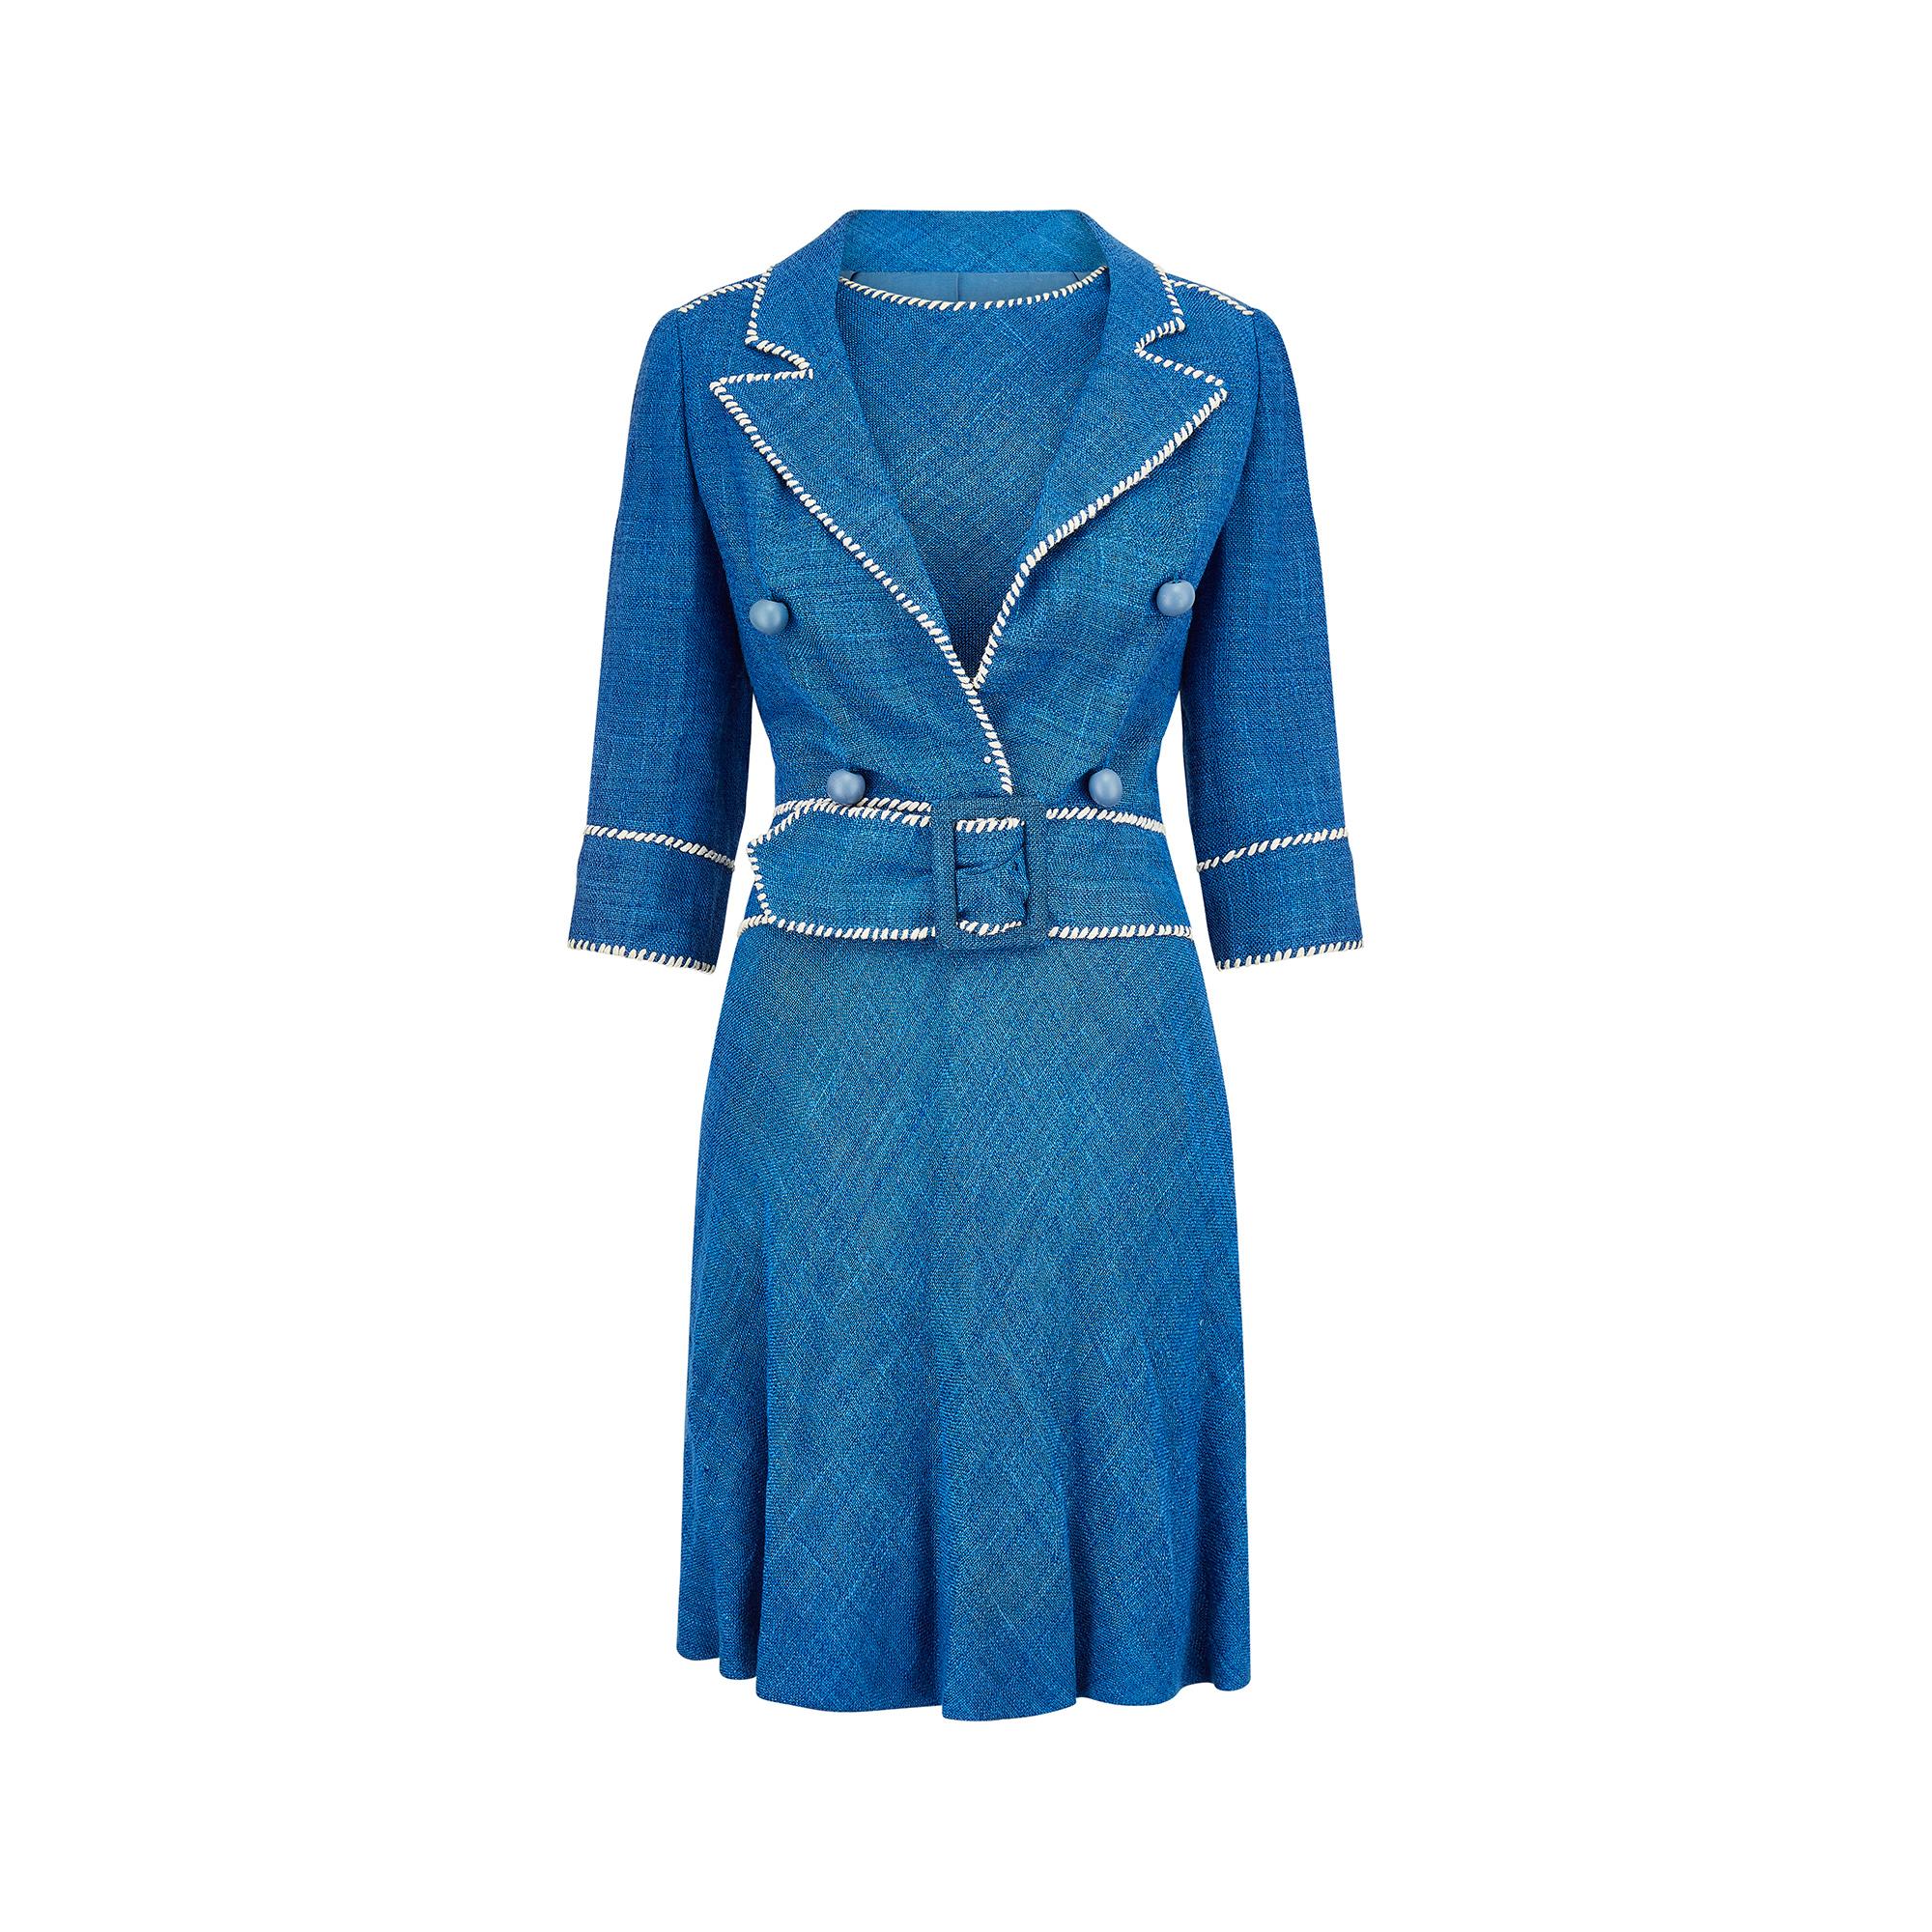 Französischer Haute-Couture-Anzug von Jacques Esterel aus der Mitte der 1950er Jahre.  Ein strukturierter, französisch-blauer, lockerer Strick aus Seide/Leinen mit einer auffälligen, weißen Überstickung, die den Halsausschnitt, die Armlöcher des